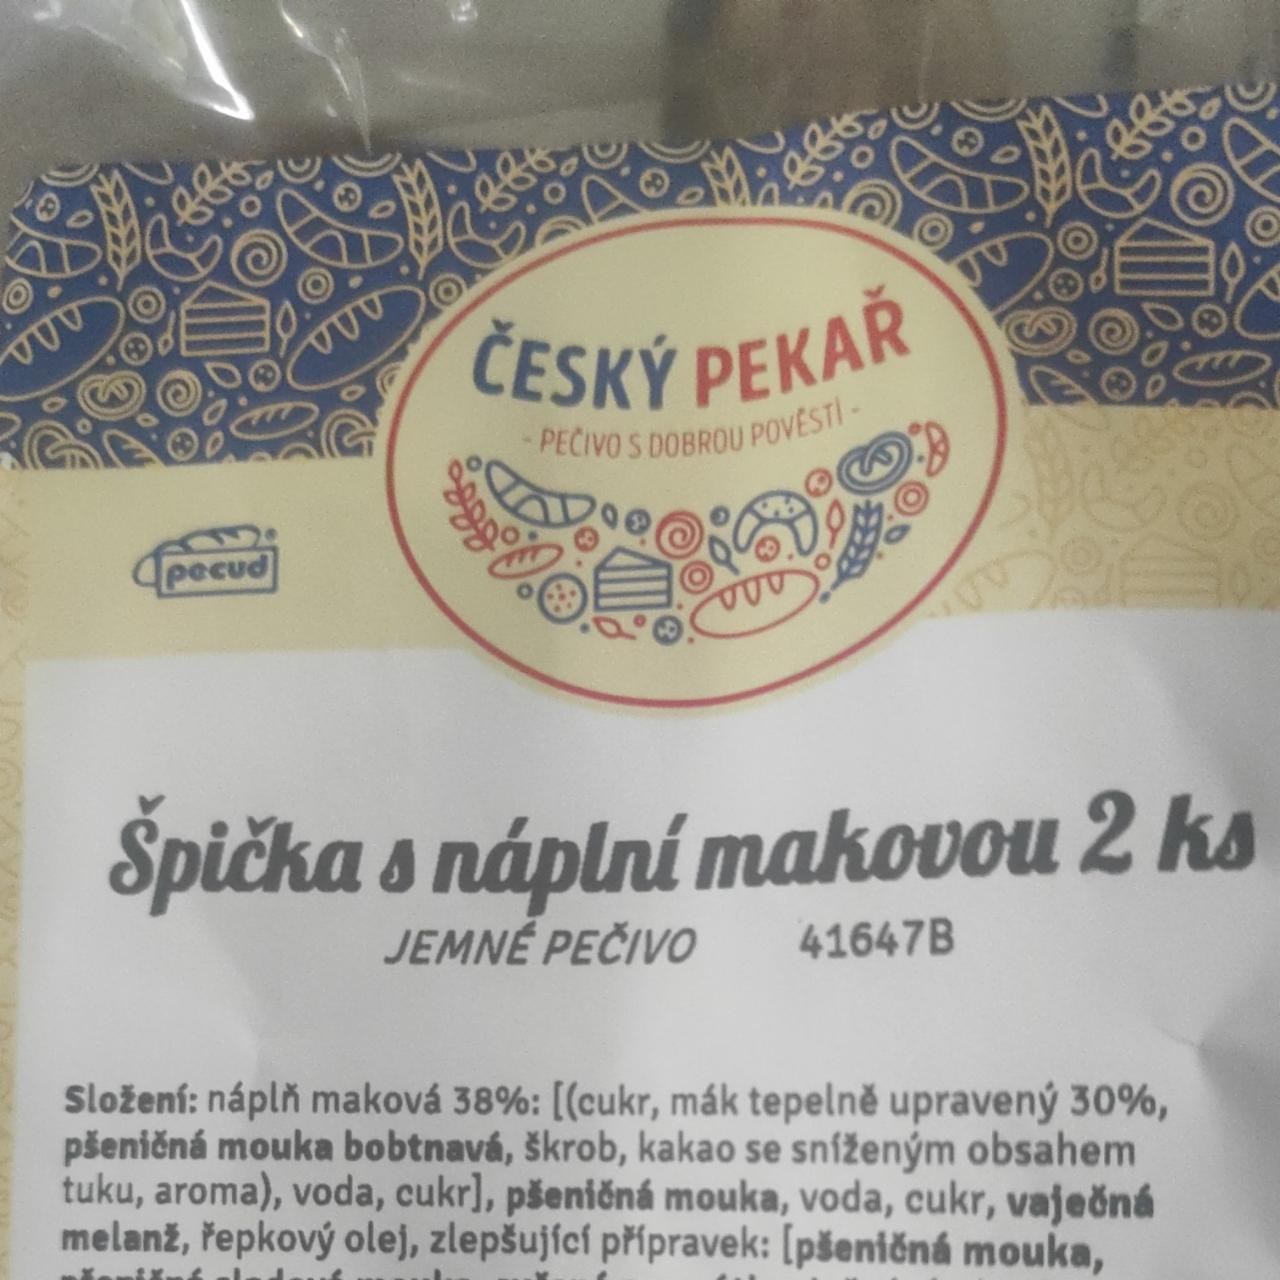 Fotografie - Špička s náplní makovou Český pekař